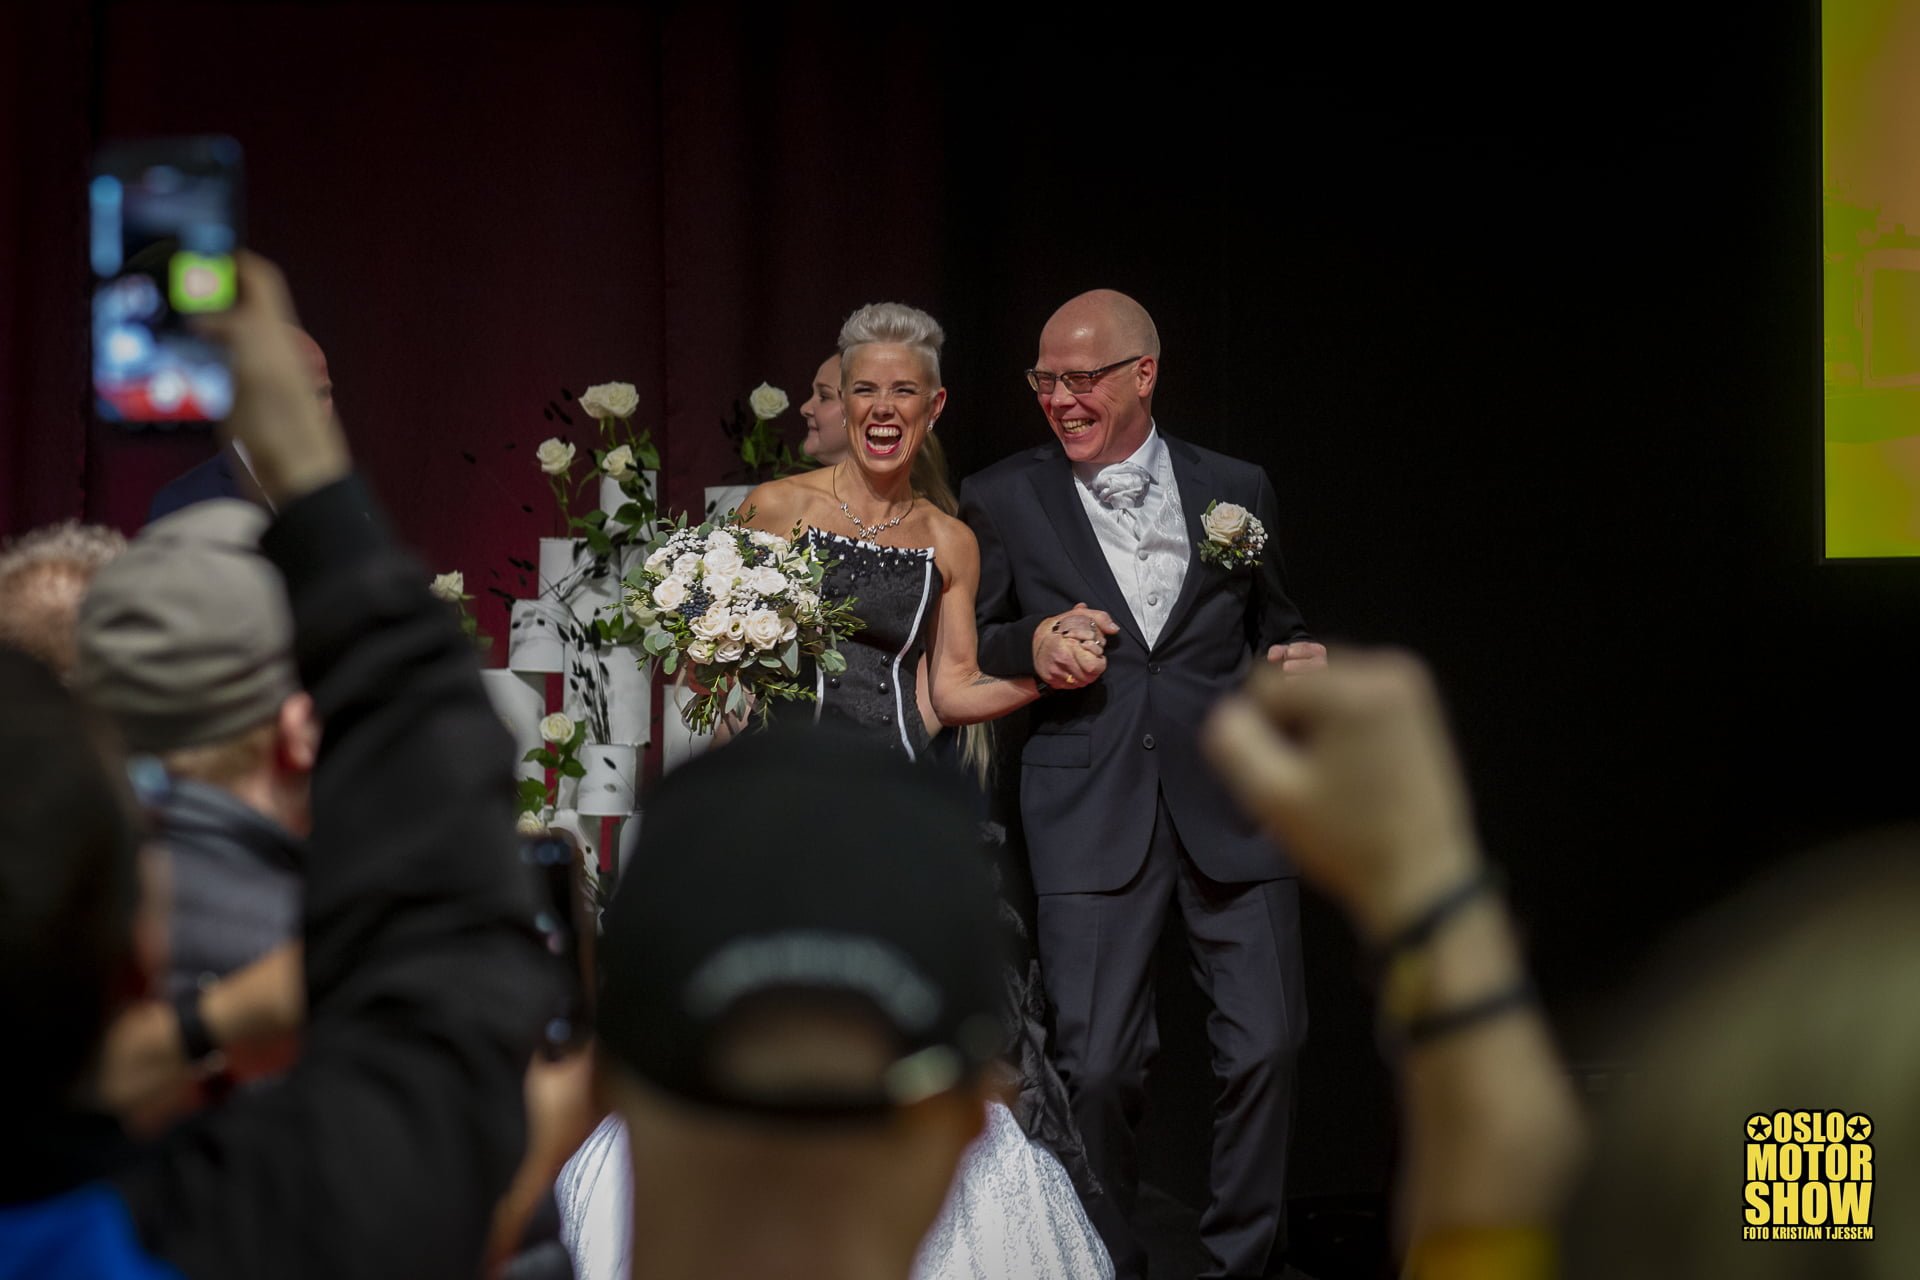 oslo-motor-show-besøkende gifter seg